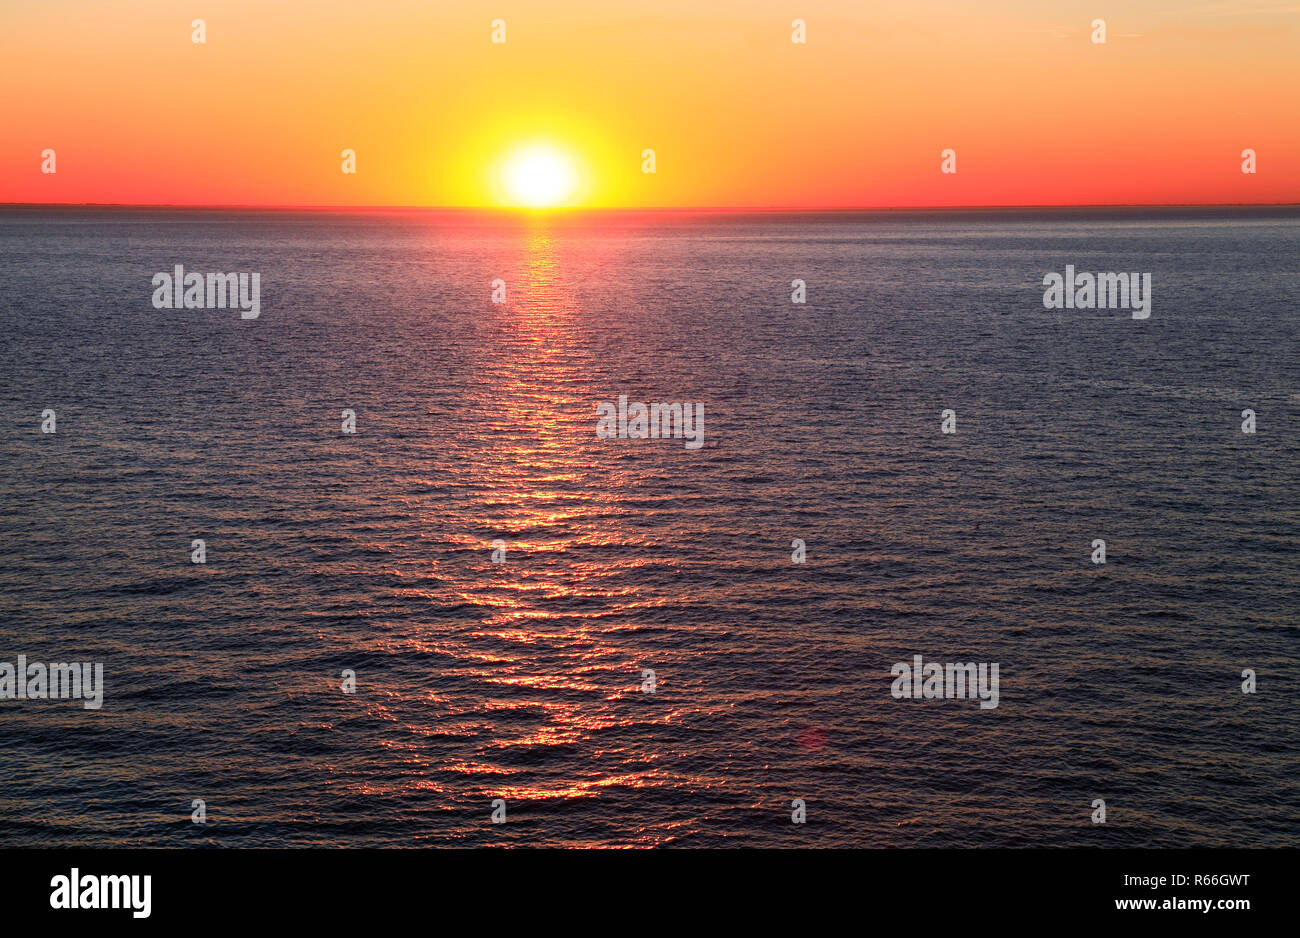 Puesta de sol, mar, rojo, naranja, el cielo, el lavado, el Mar del Norte, el rayo de sol, sobre el agua, frente a la costa oeste, Norfolk, UK Foto de stock